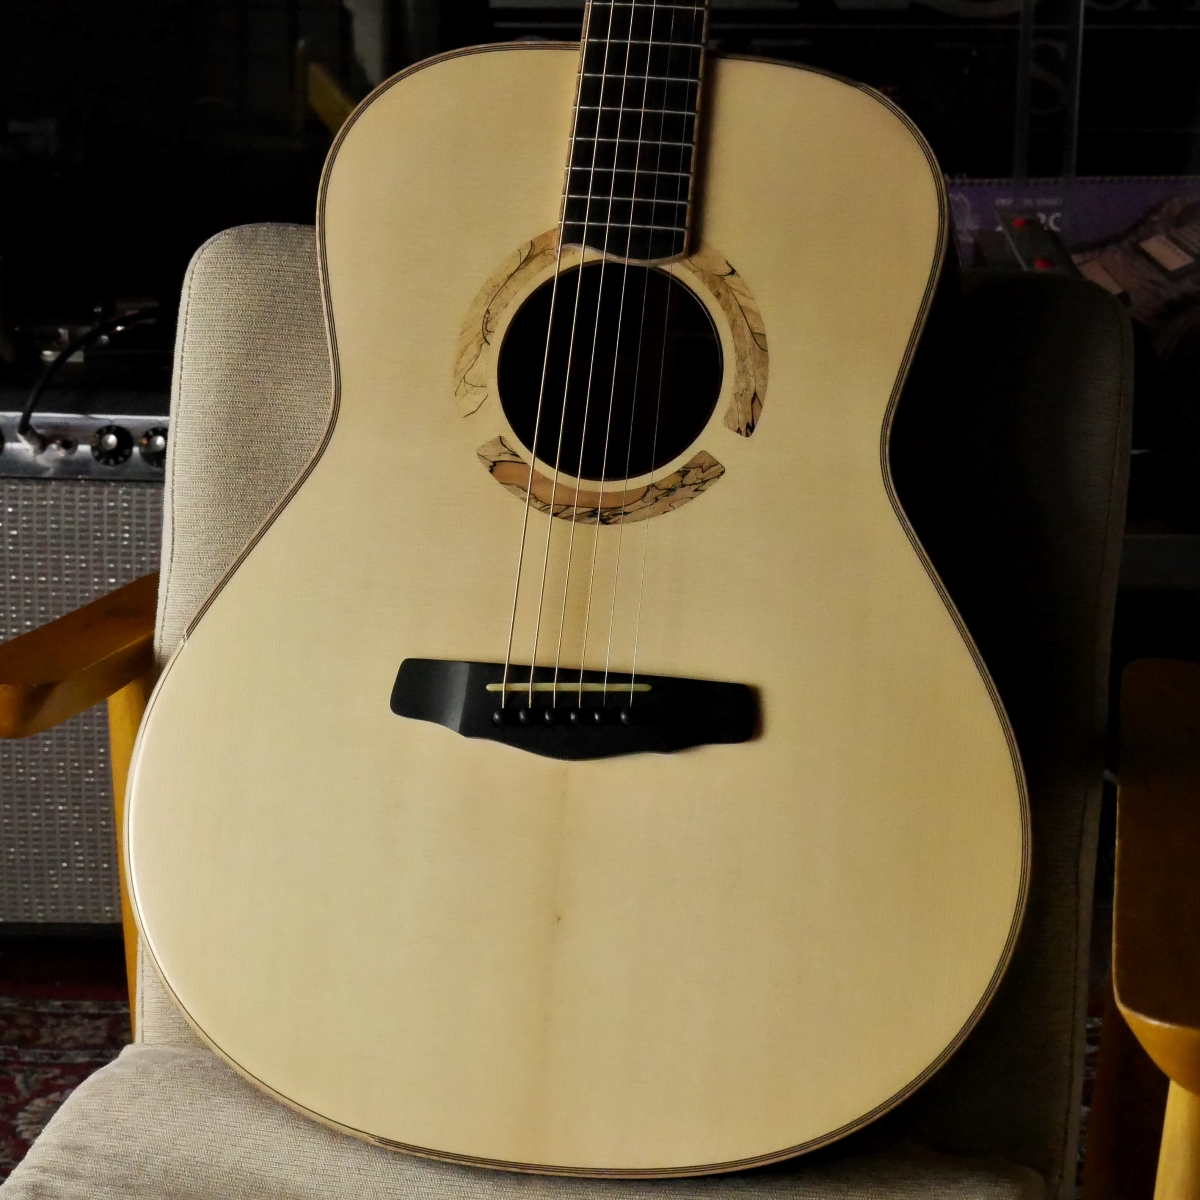 SP店 : Yokoyama Guitars / AN-GR #1029 / German Spruce & Indian Rosewood